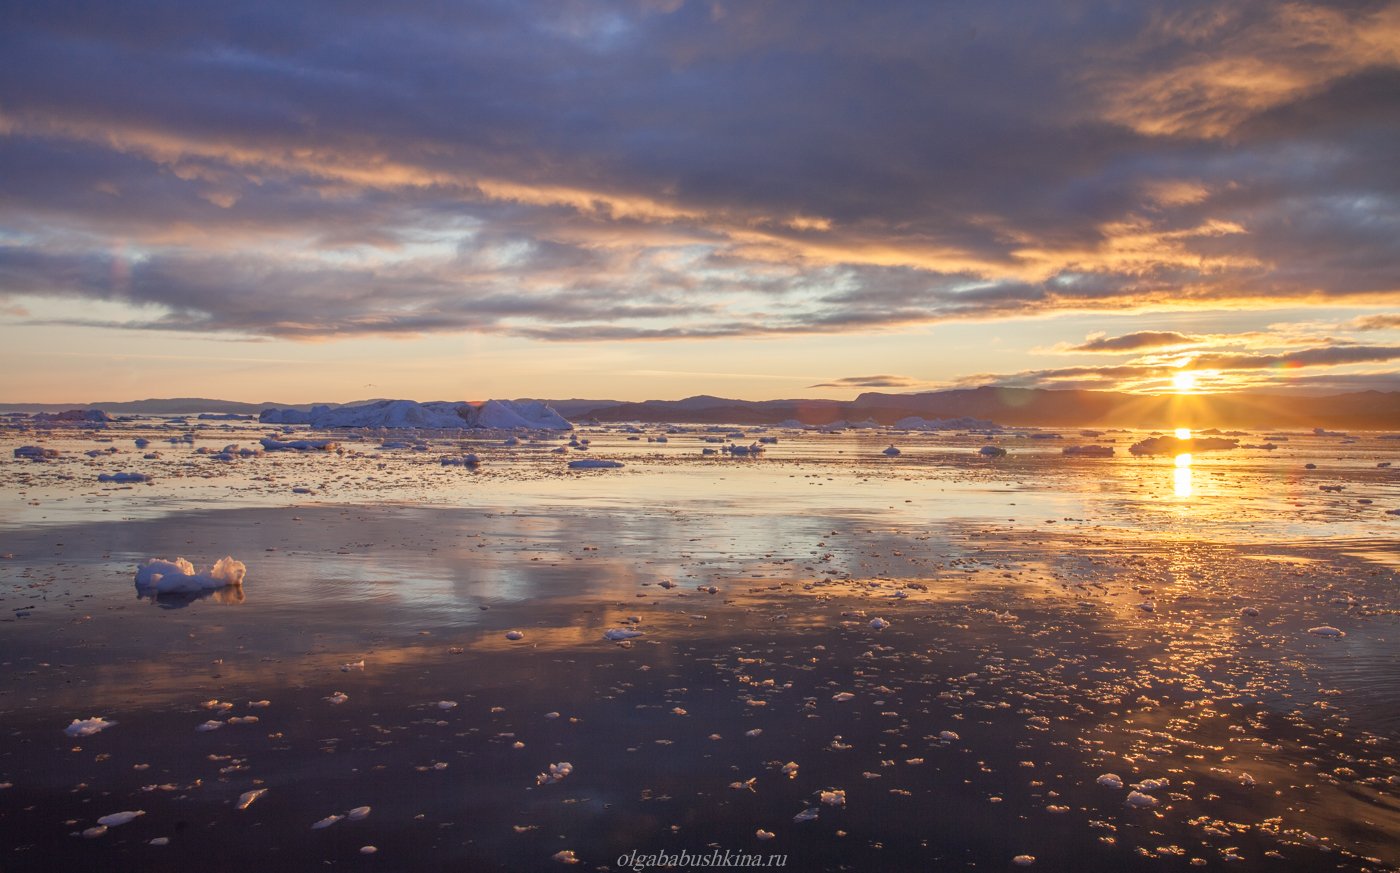 арктика, гренландия, arctic, greenland, sunrise, рассвет, фотопутешествие, фототур, Ольга Бабушкина